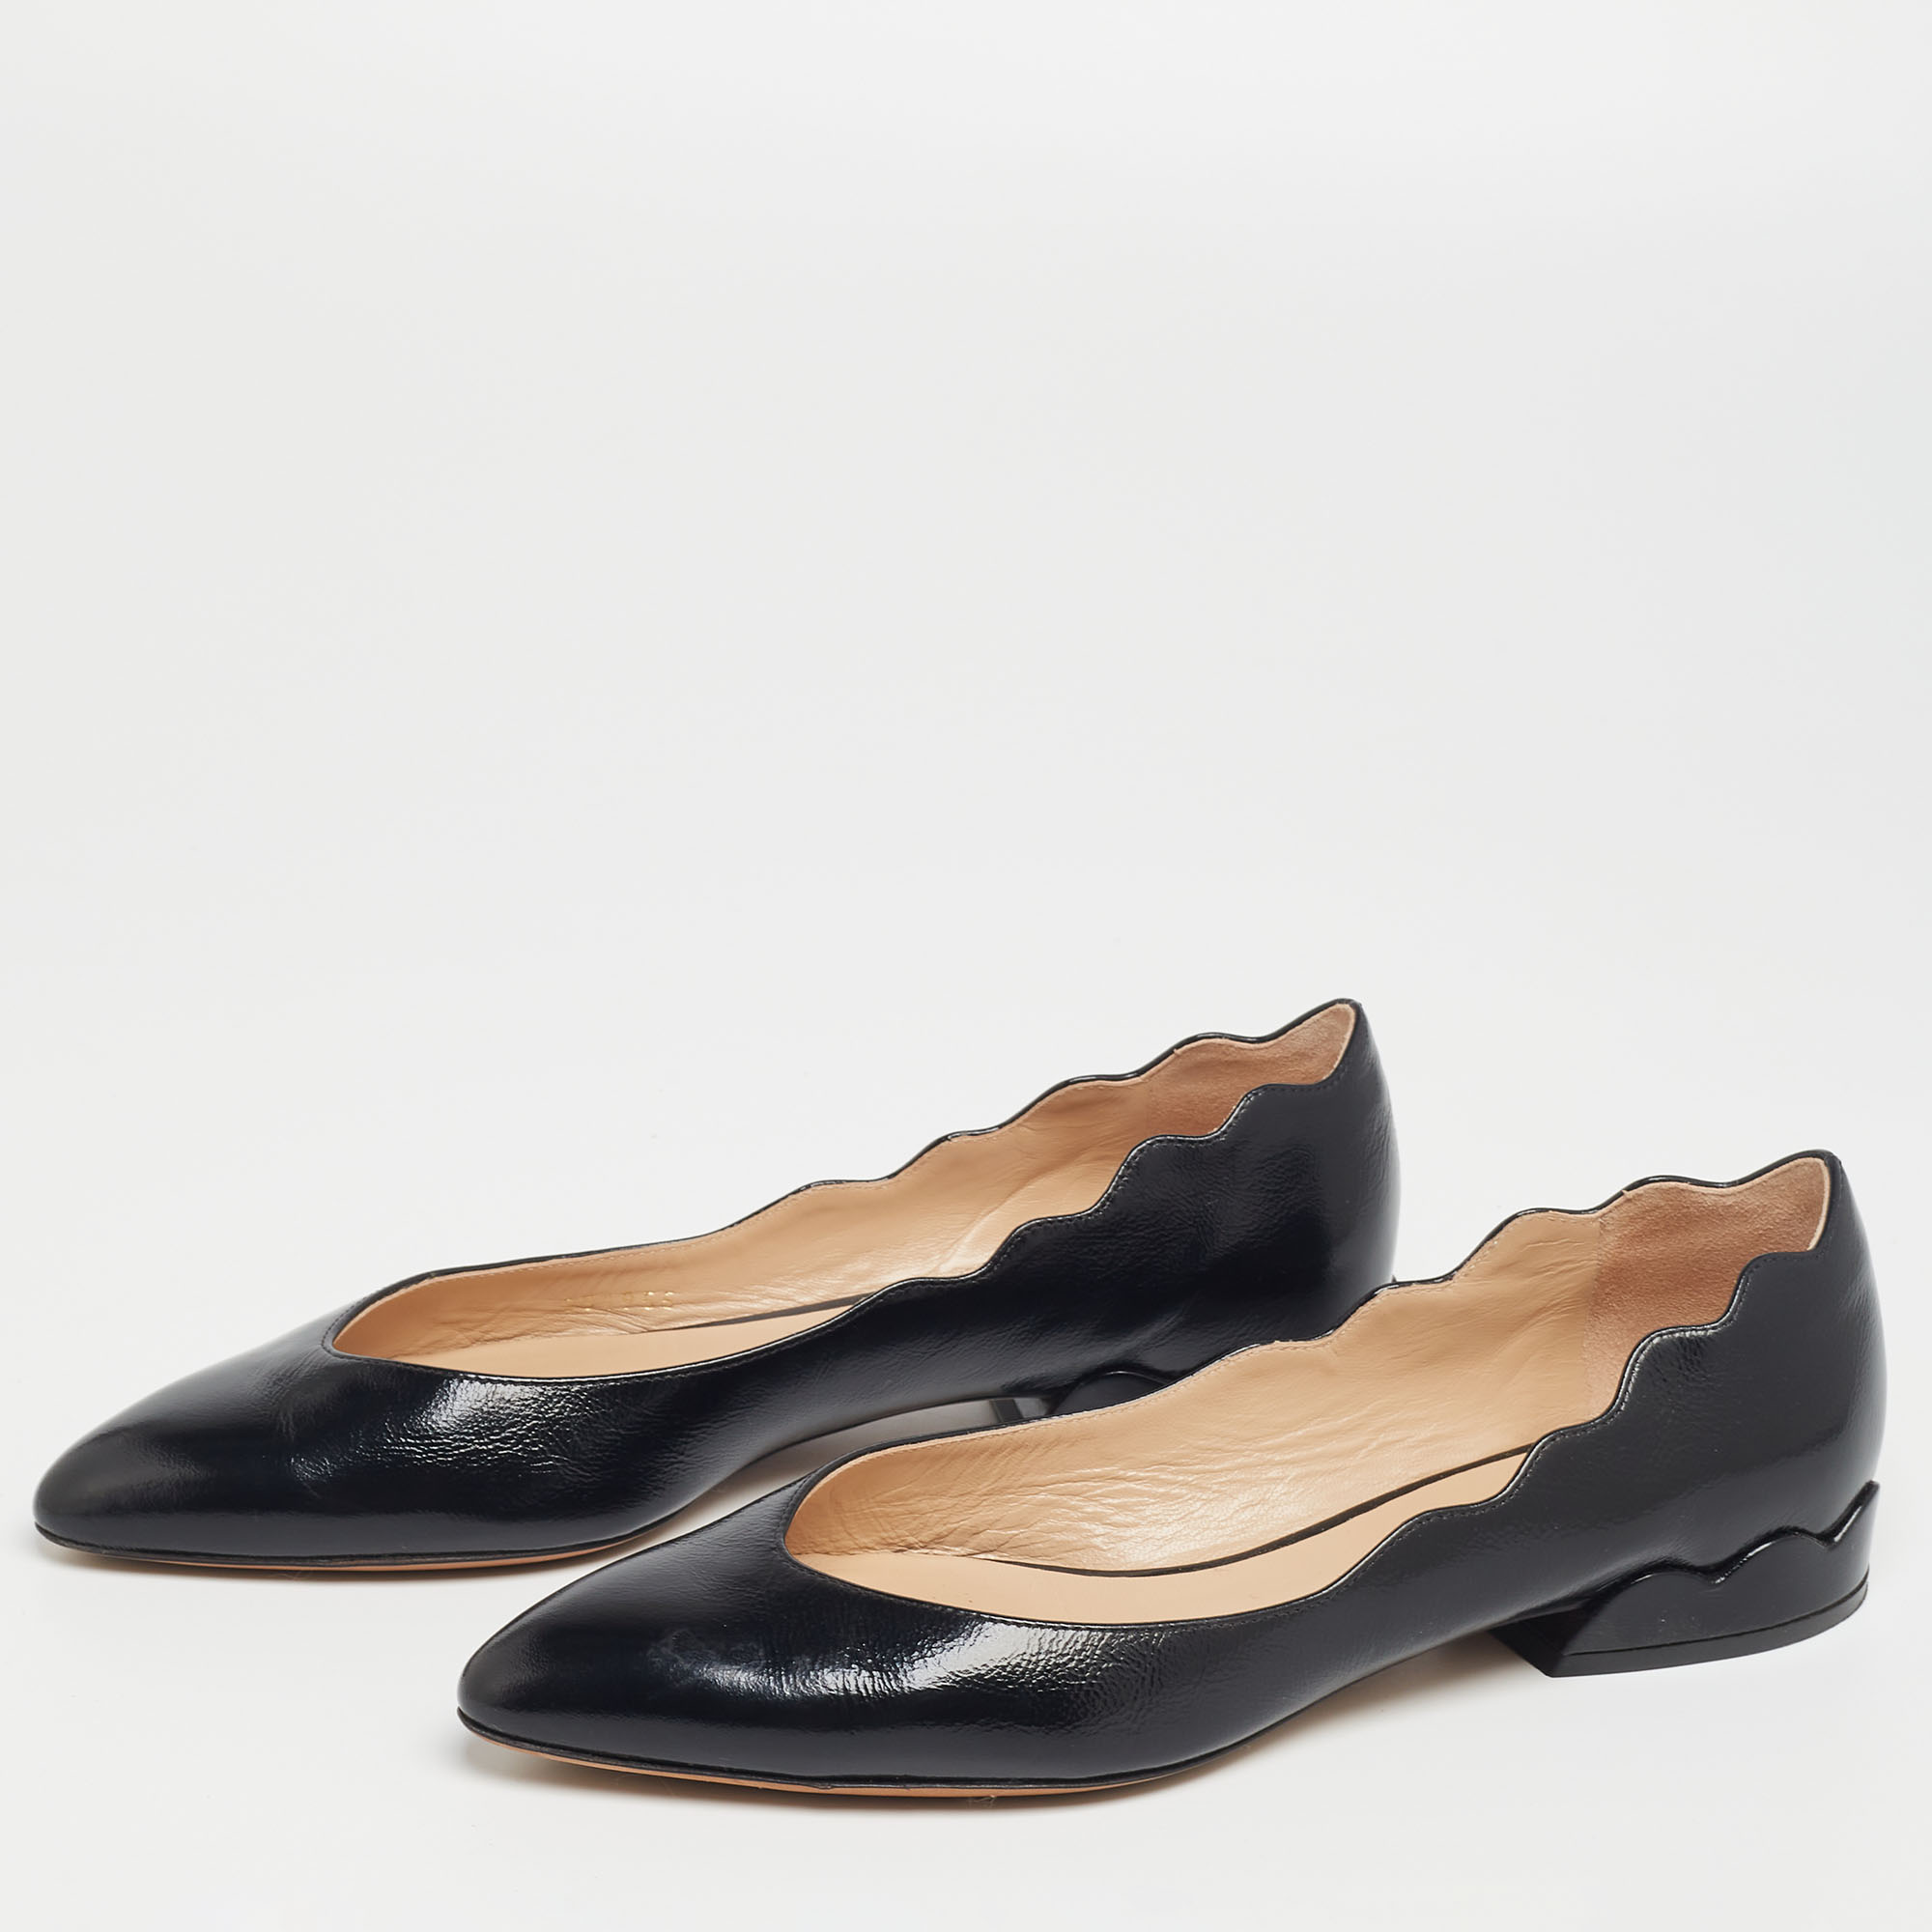 

Chloé Black Scalloped Patent Leather Lauren Ballet Flats Size